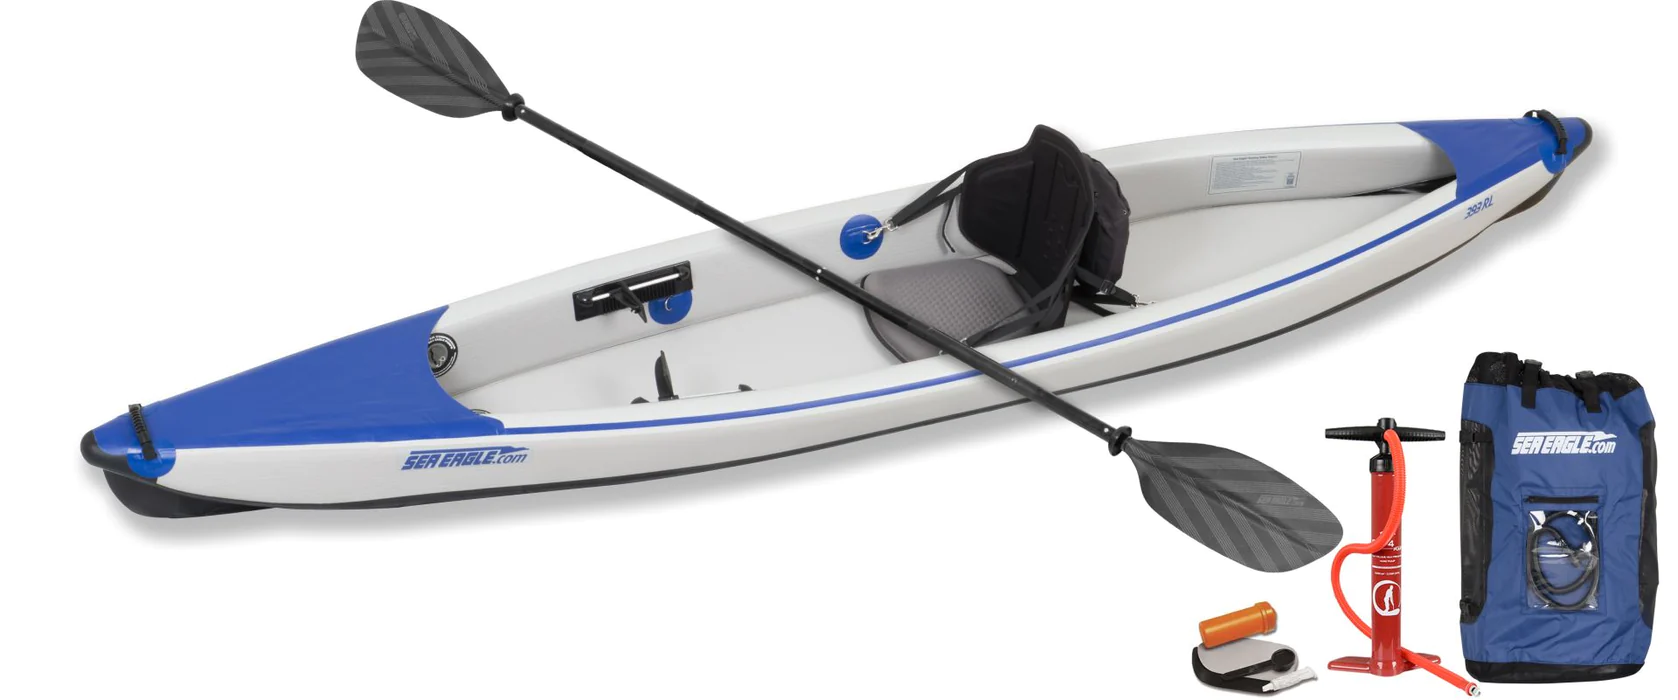 Kayak Technology Innovations